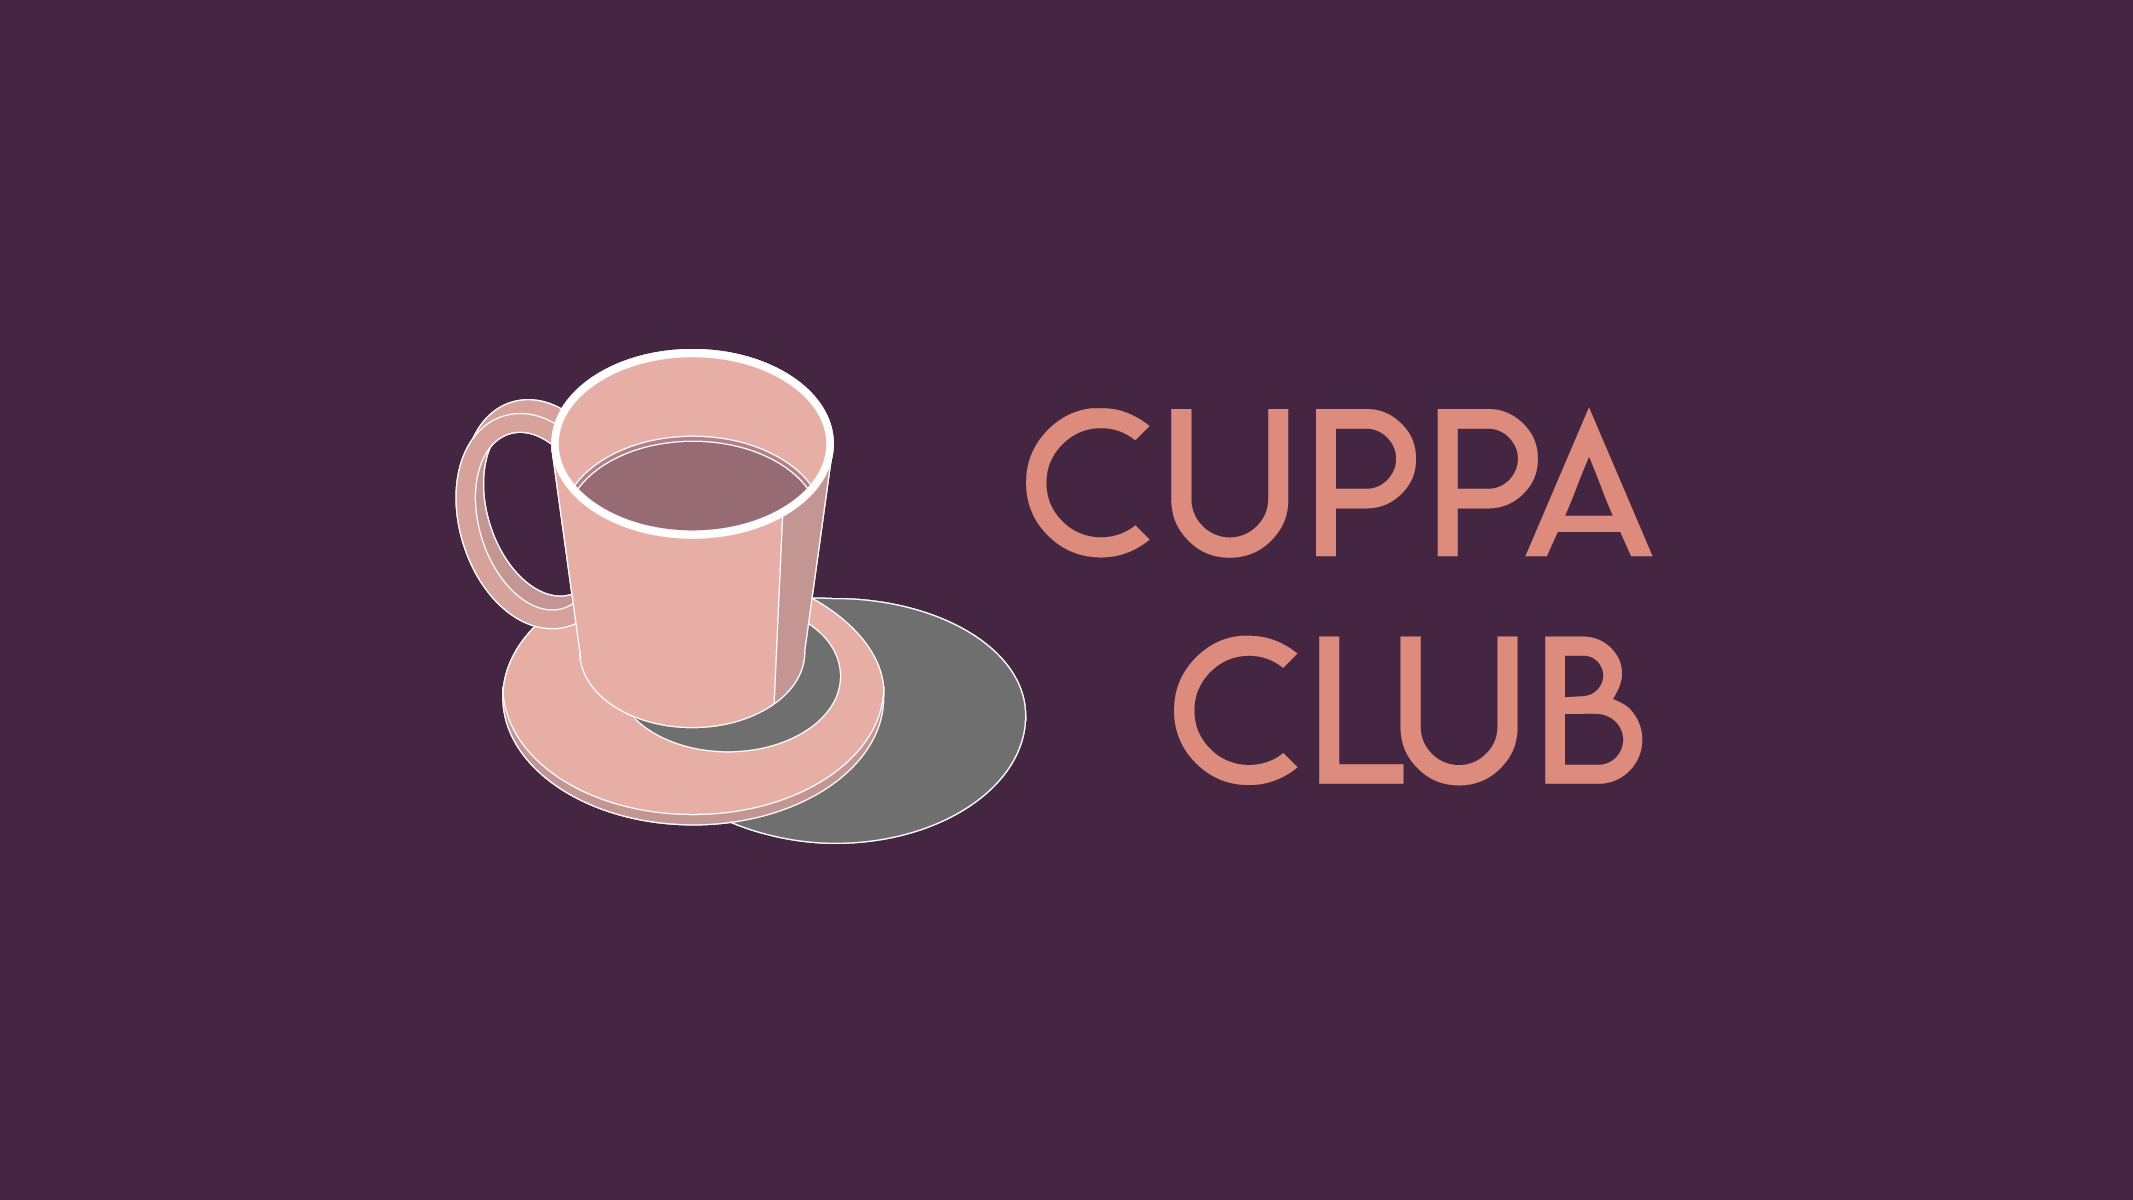 Cuppa Club